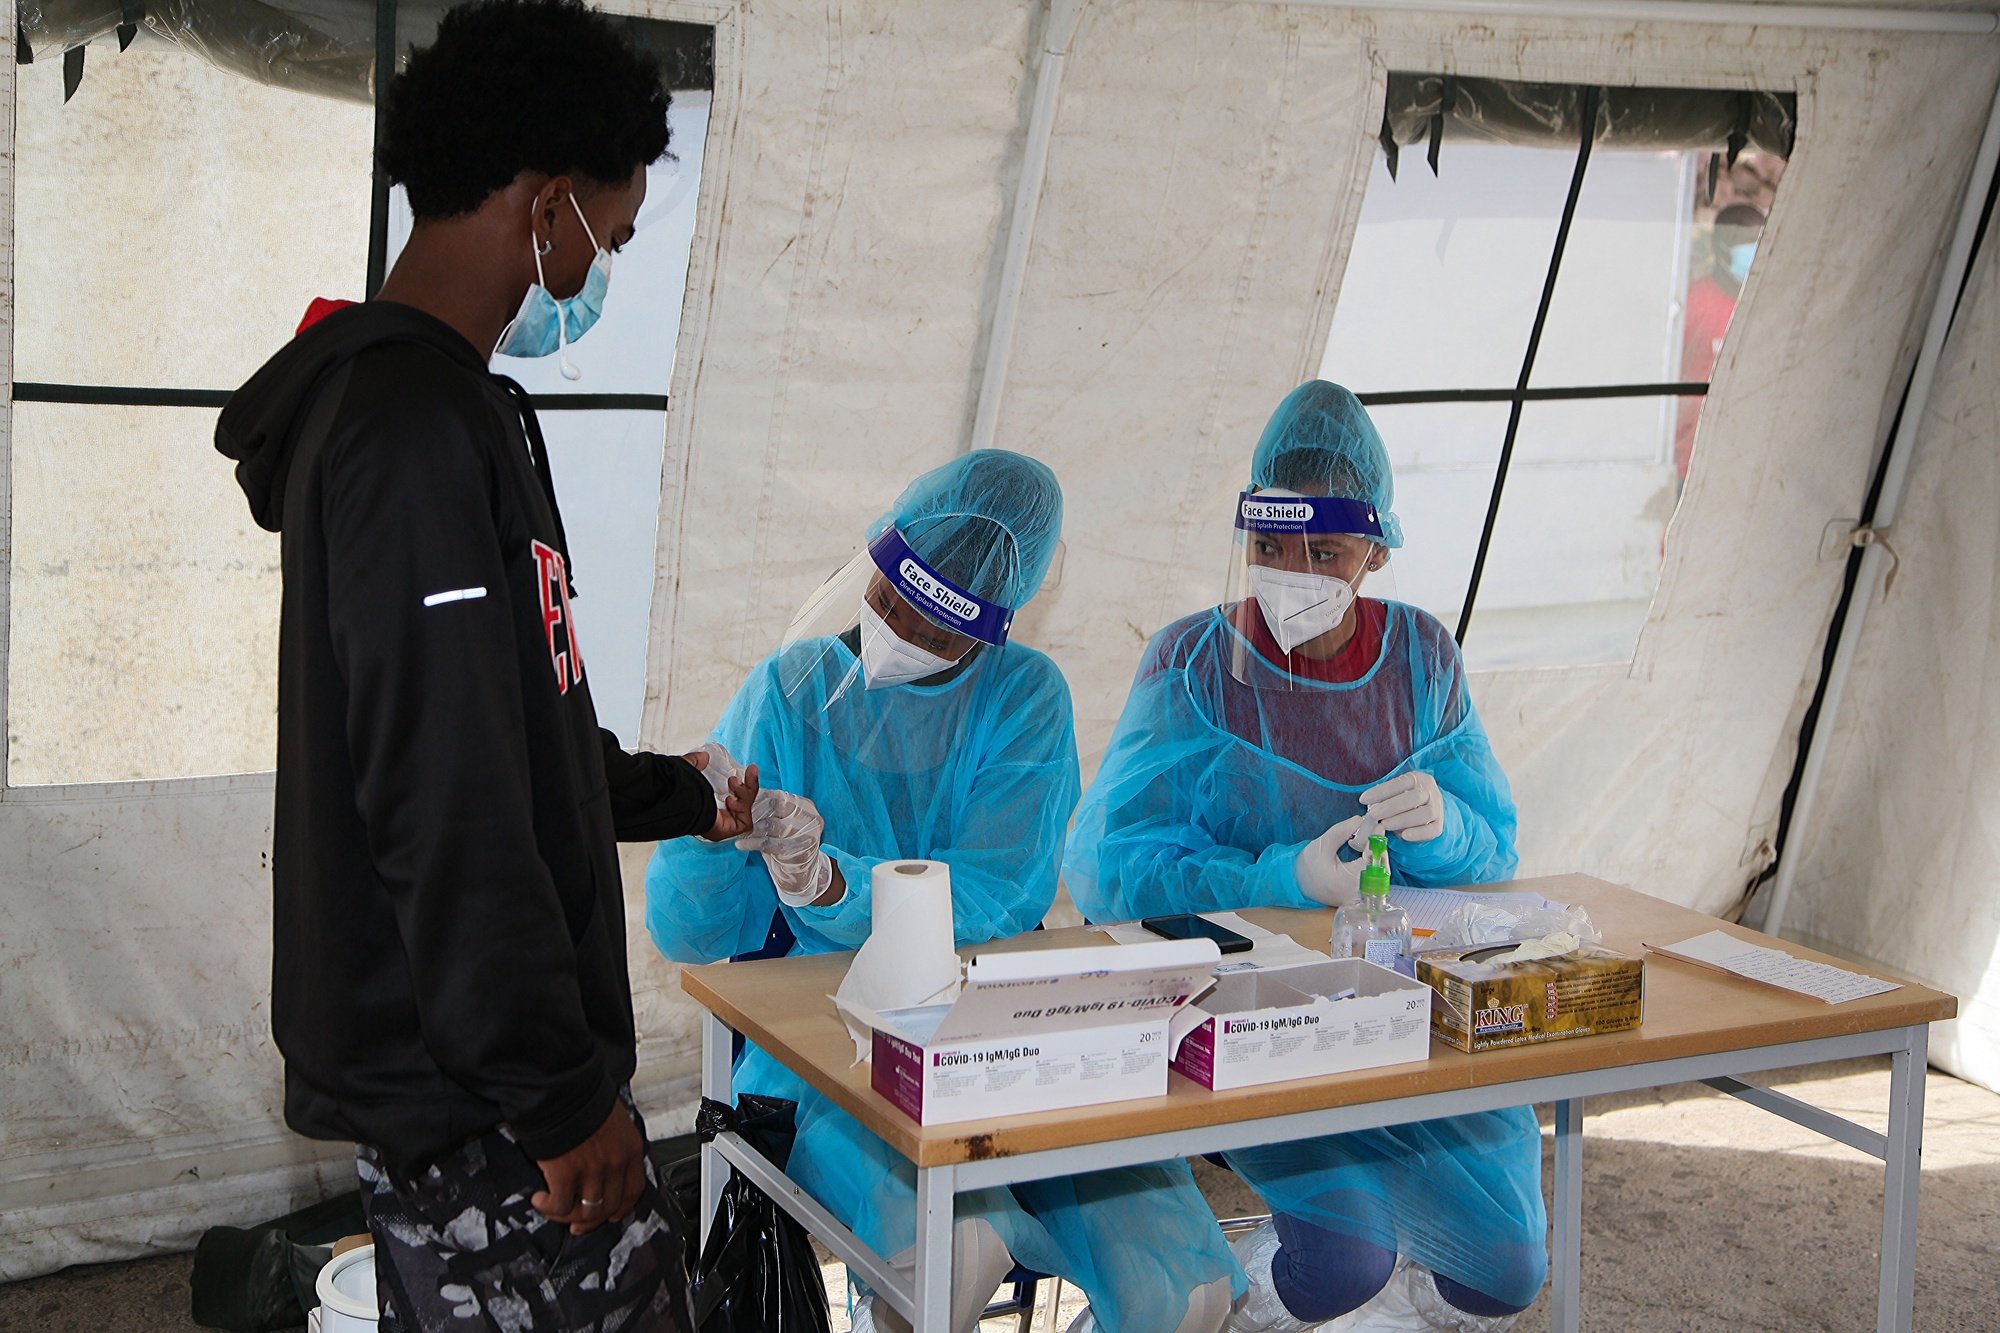 Técnicos de saúde recolhem amostras de sangue numa tenda de testes rápidos no âmbito das atividades de controlo da covid-19 na Cidade da Praia, Cabo Verde, 26 de maio de 2020. FERNANDO DE PINA/LUSA